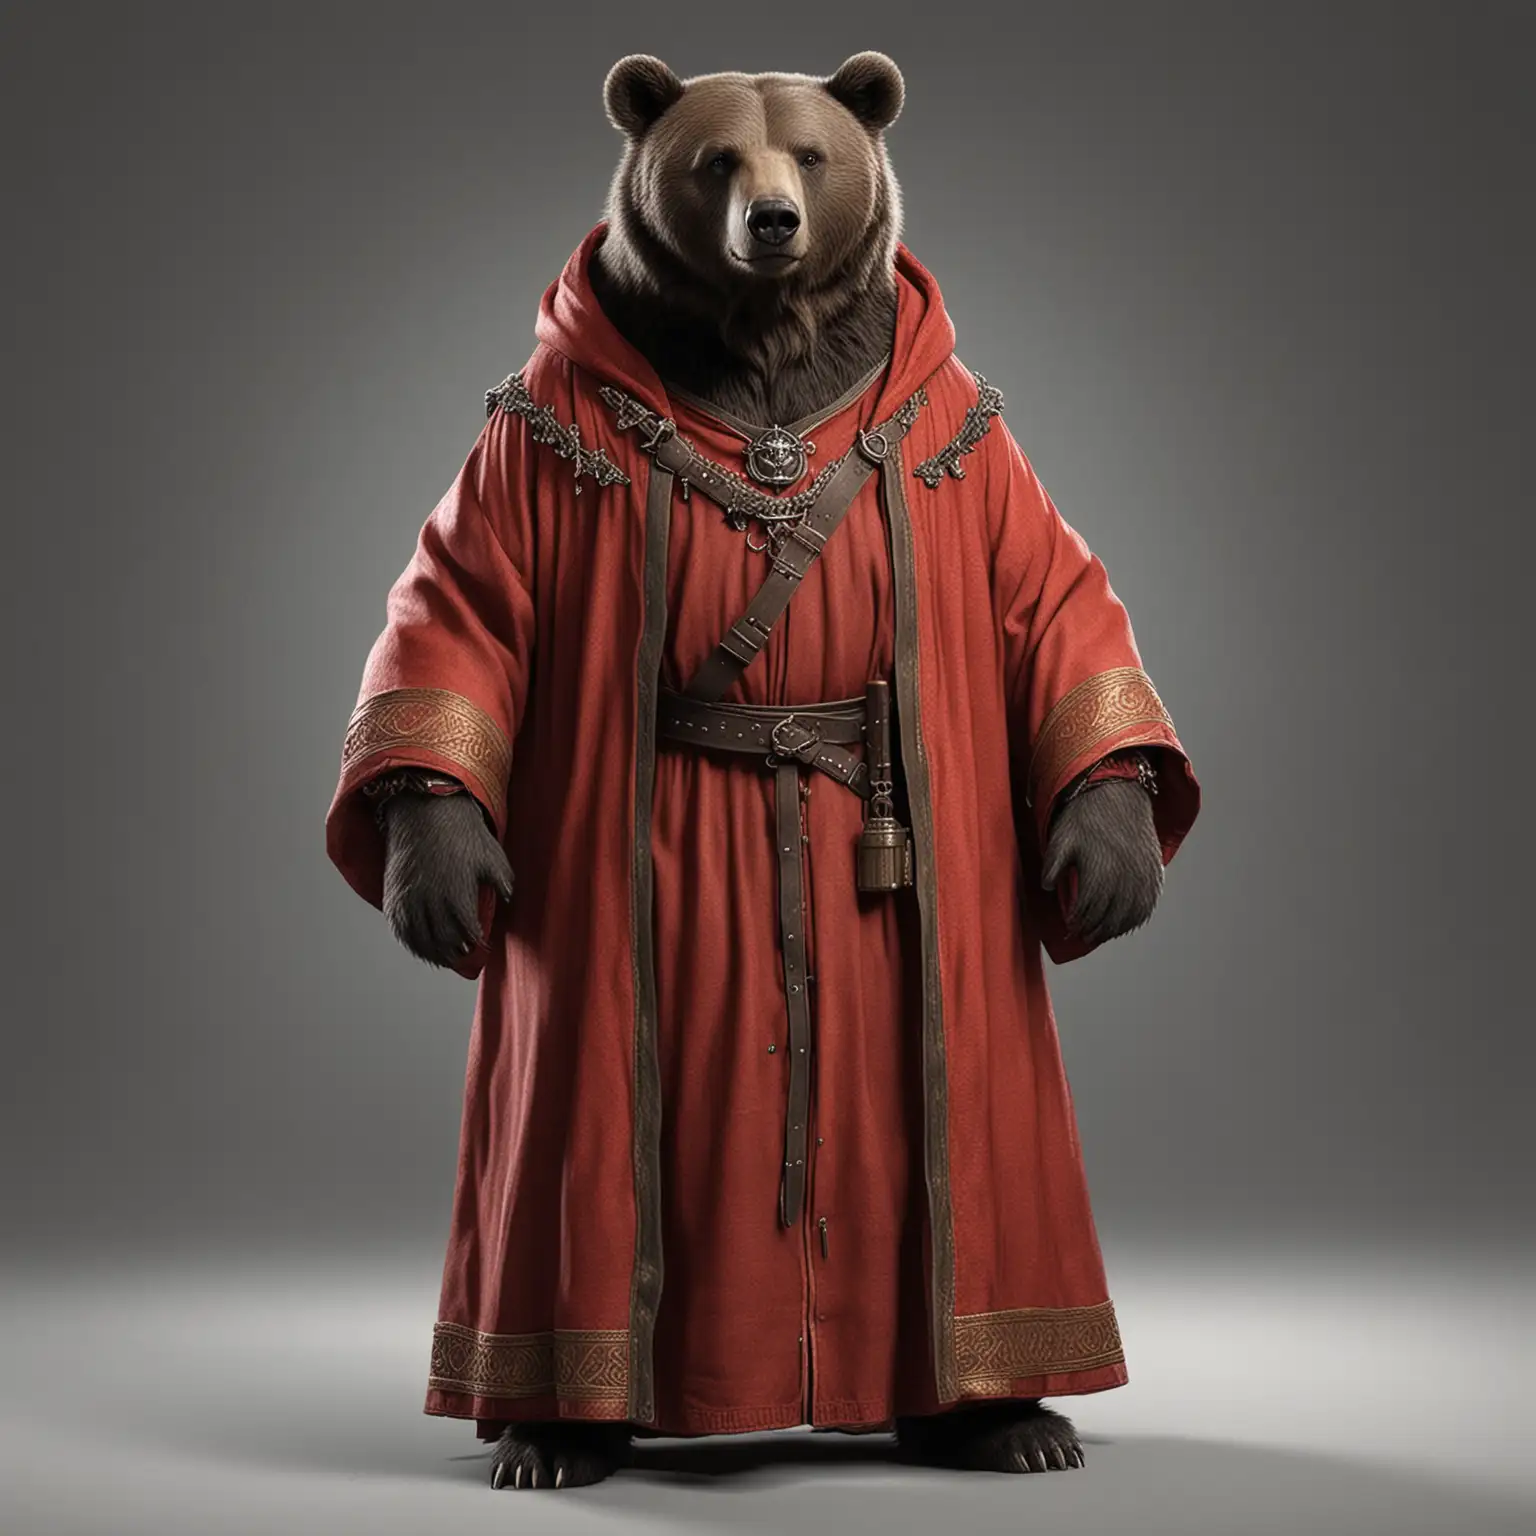 реалистичный медведь-инквизитор в красном средневековом одеянии в полный рост